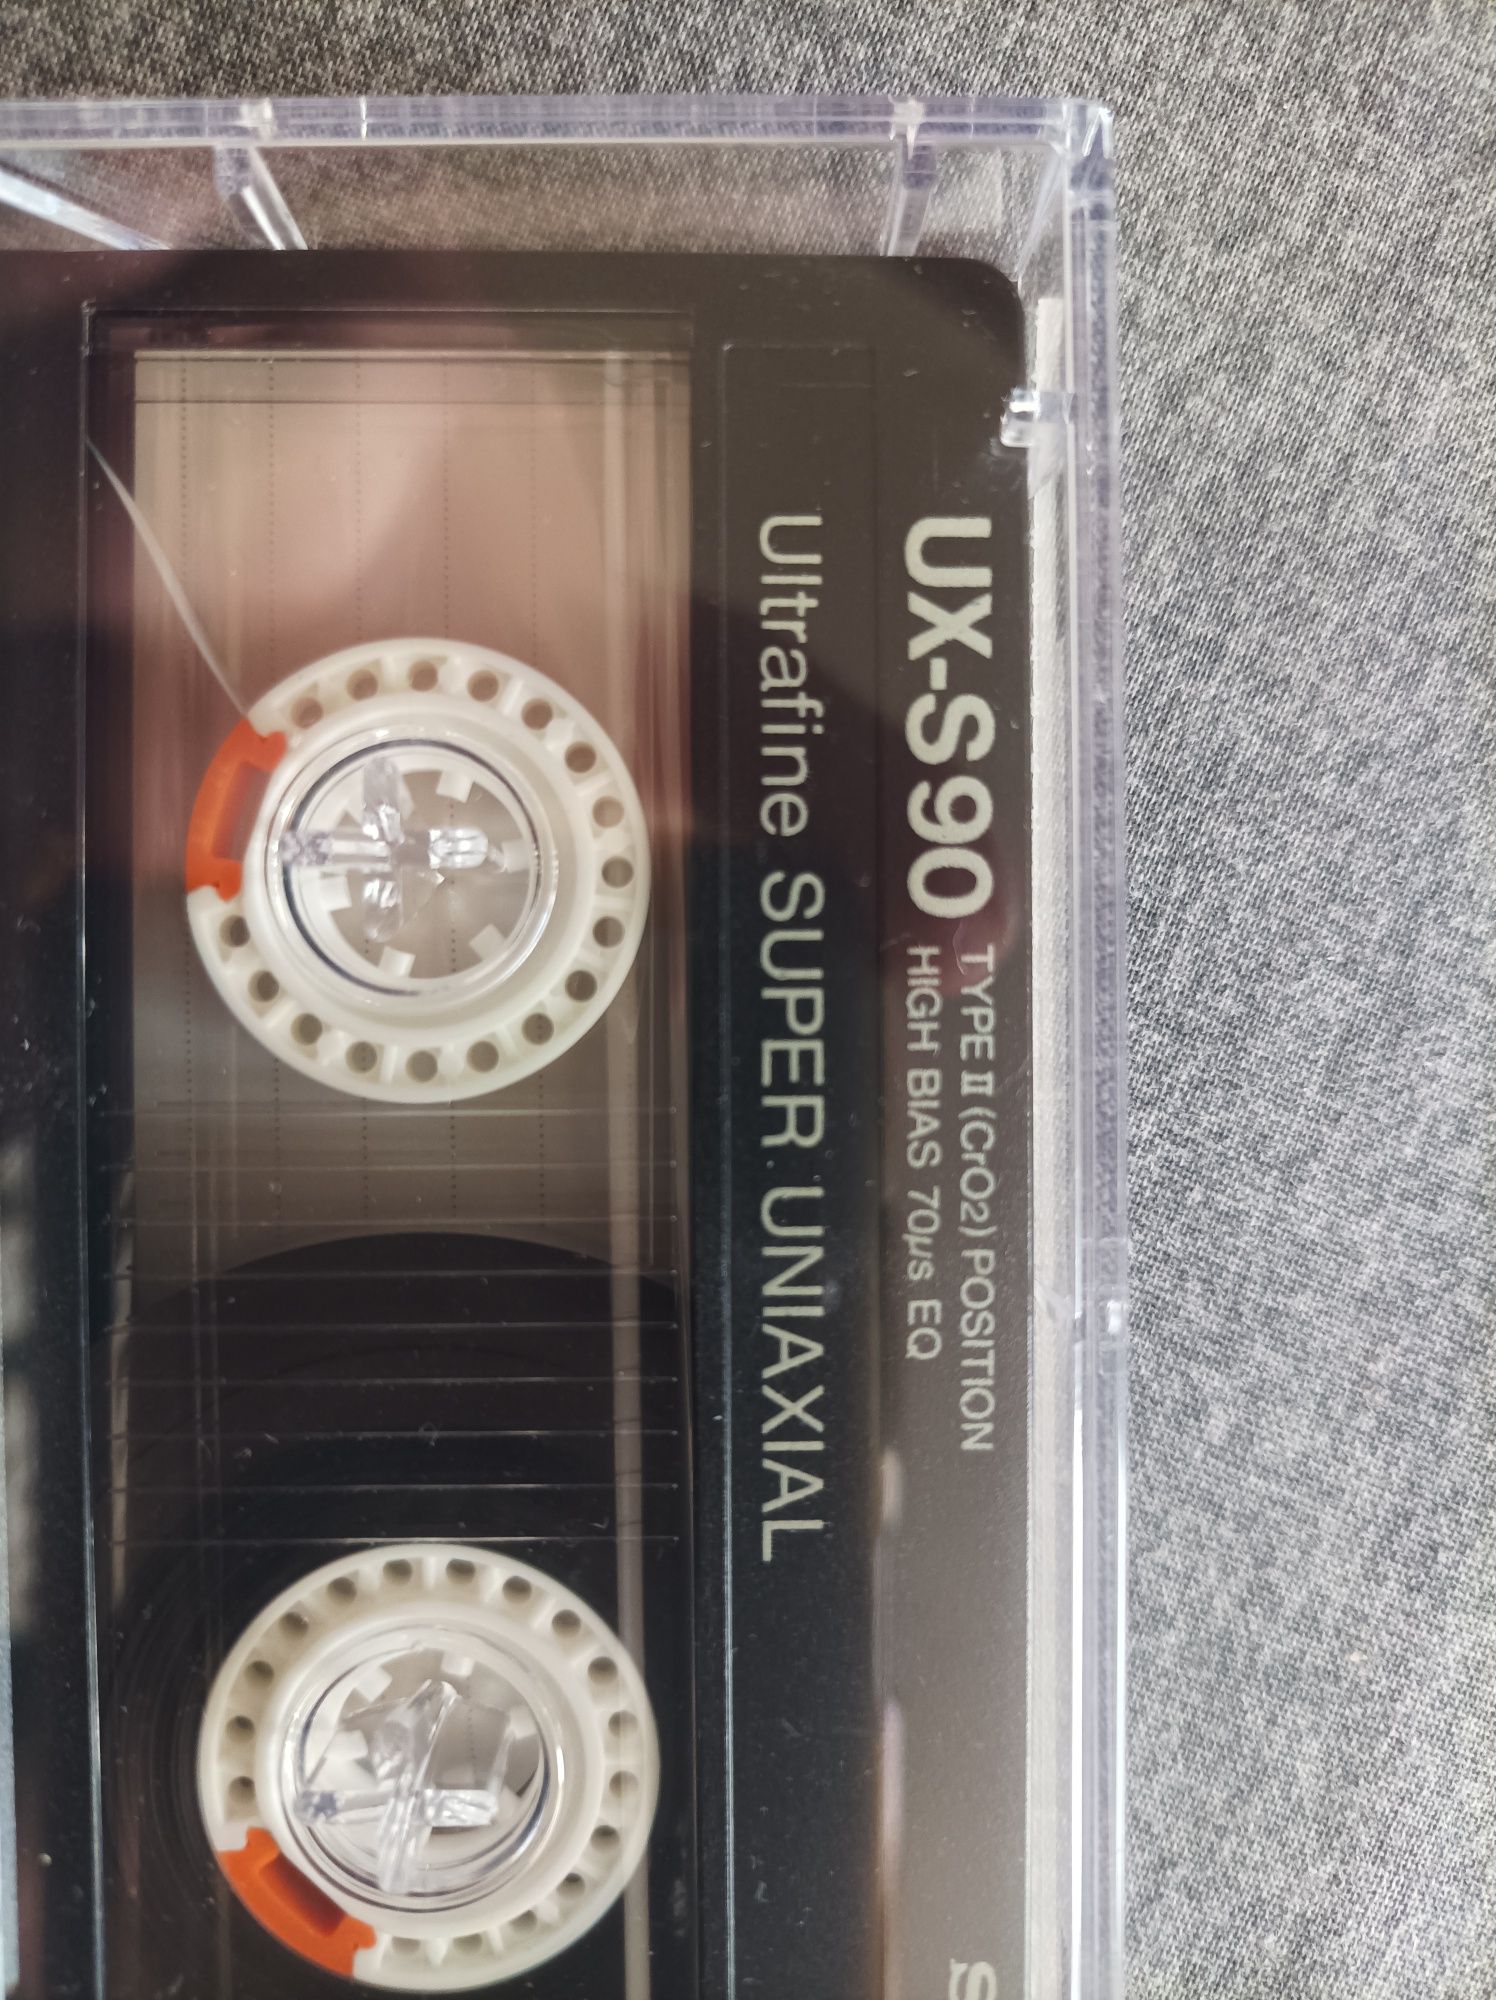 Kaseta SONY UX-S 90 SUPER UNIAXIAL Super Chrom NOWA rozpakowana OKAZJA